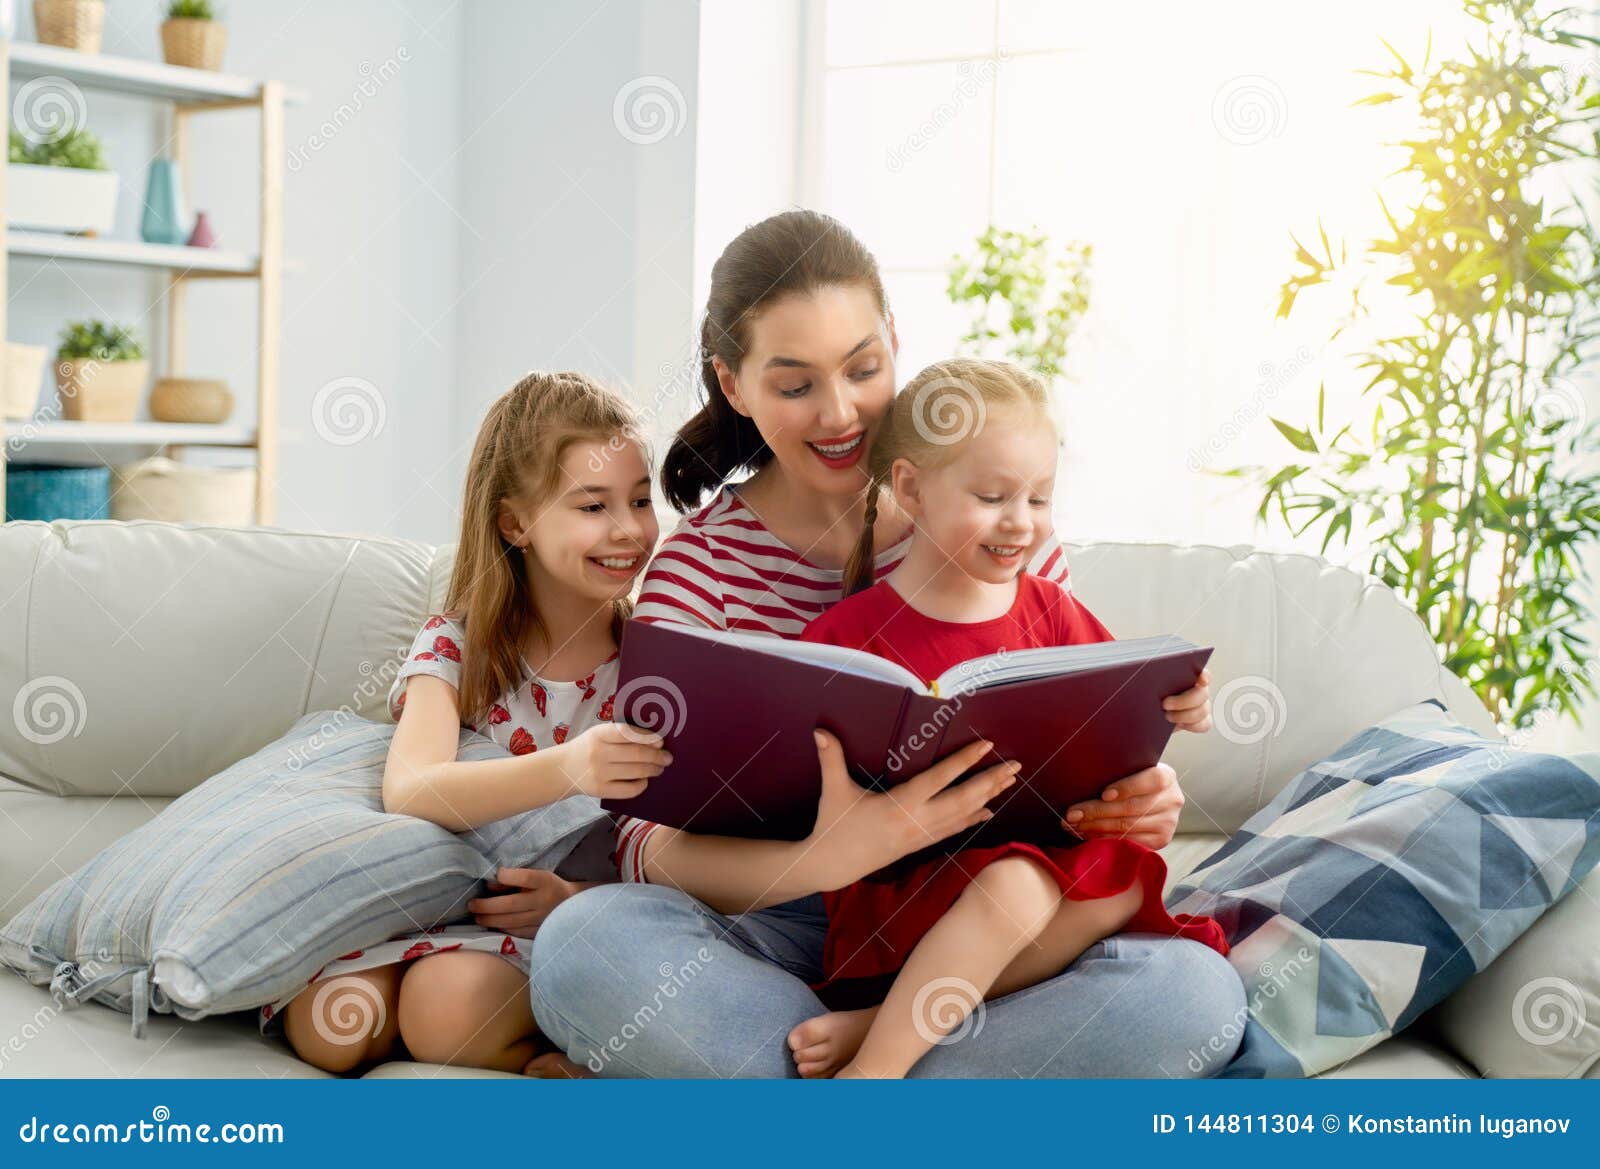 Акция читает семья читает страна. Читает семья читает Страна. Читающая семья. Xbnftn ctvmz xbnfytn cnhfyf. Семья читает книгу.